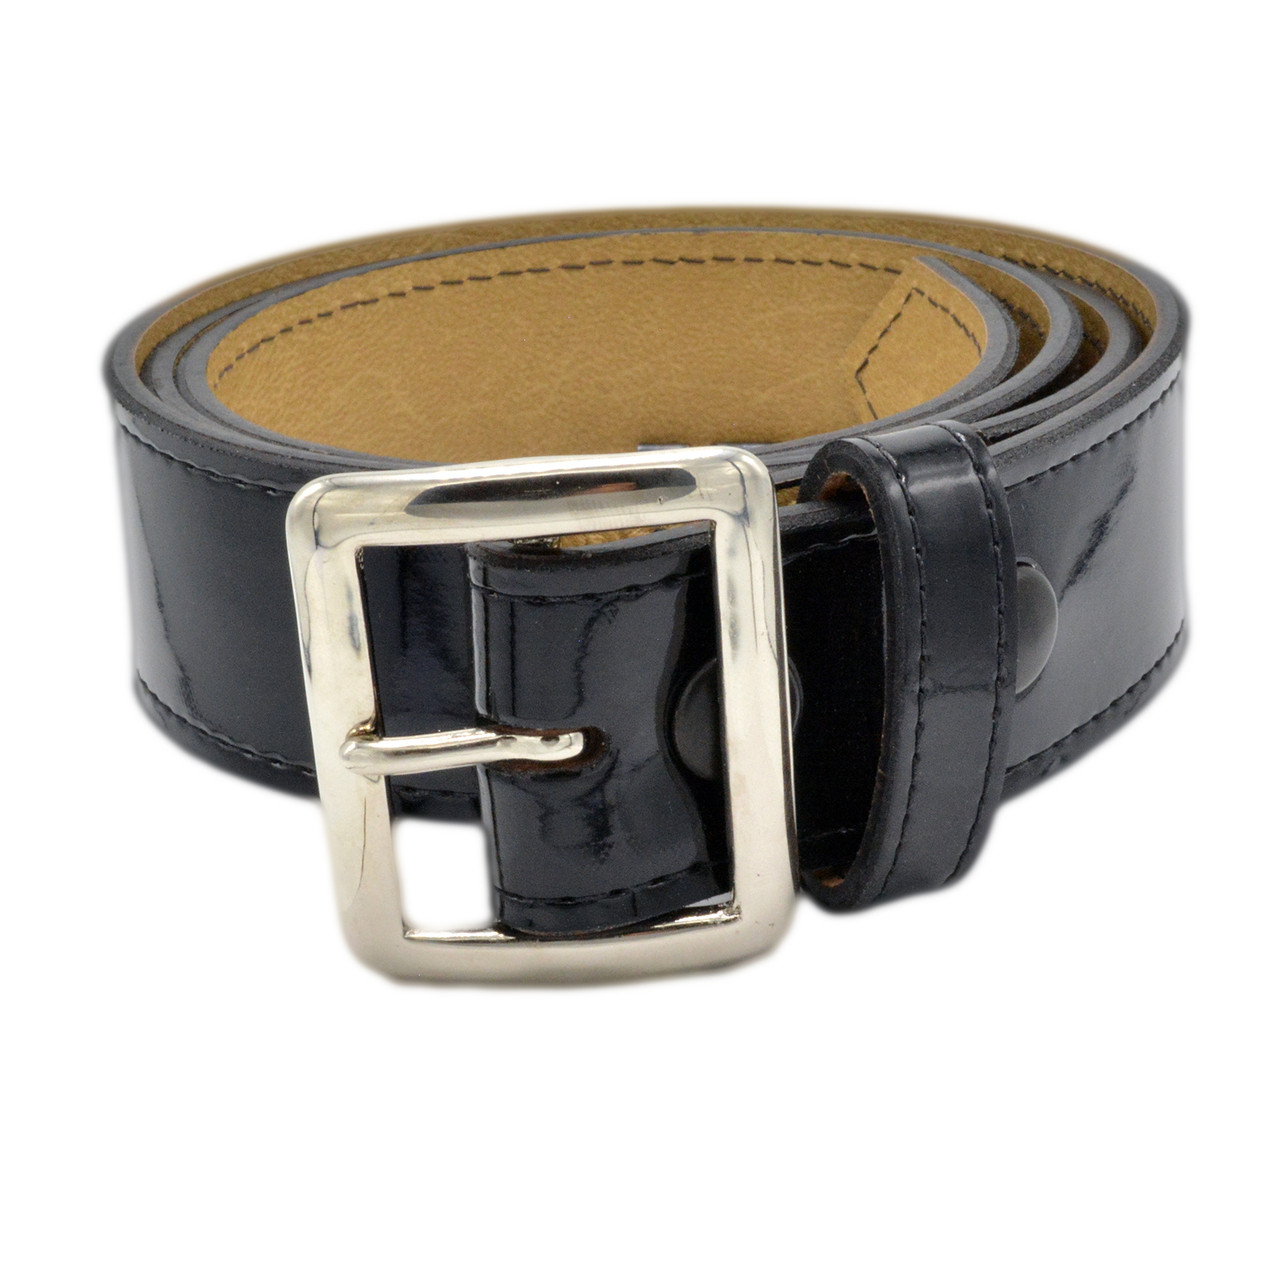 Galdo Black/Silver Leather Long shoulder strap